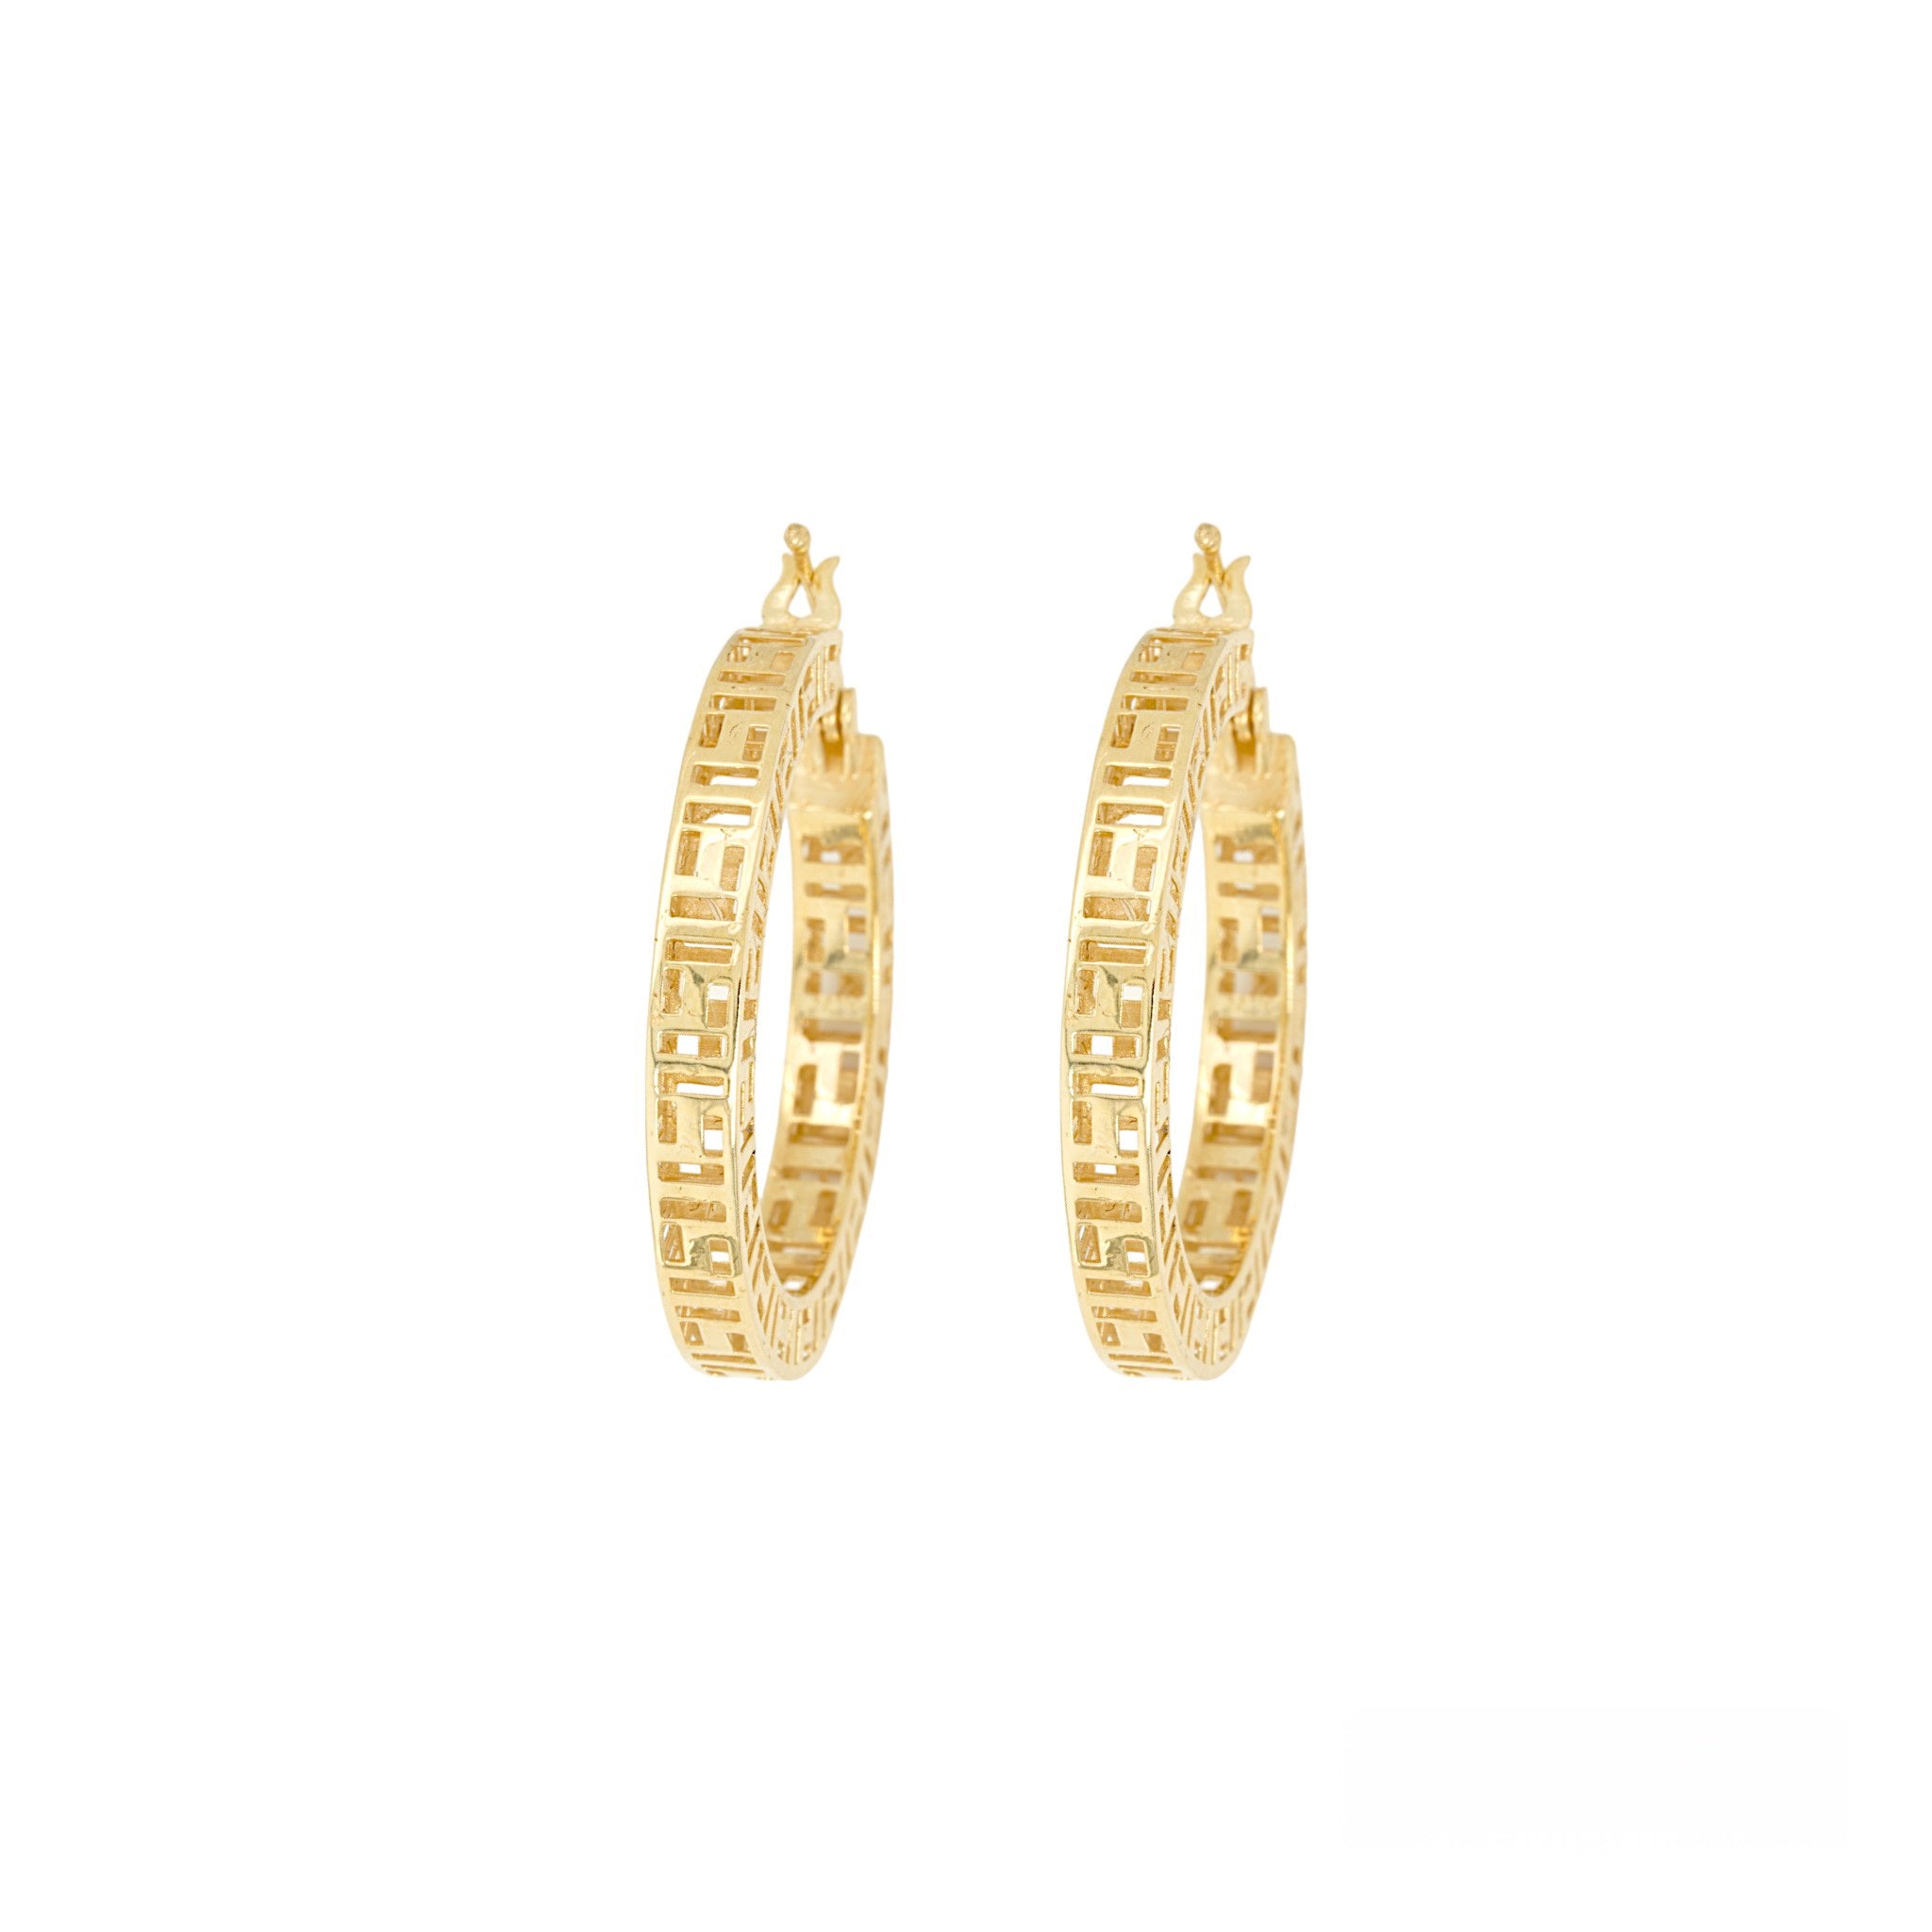 10K Yellow gold Greek Key design earrings